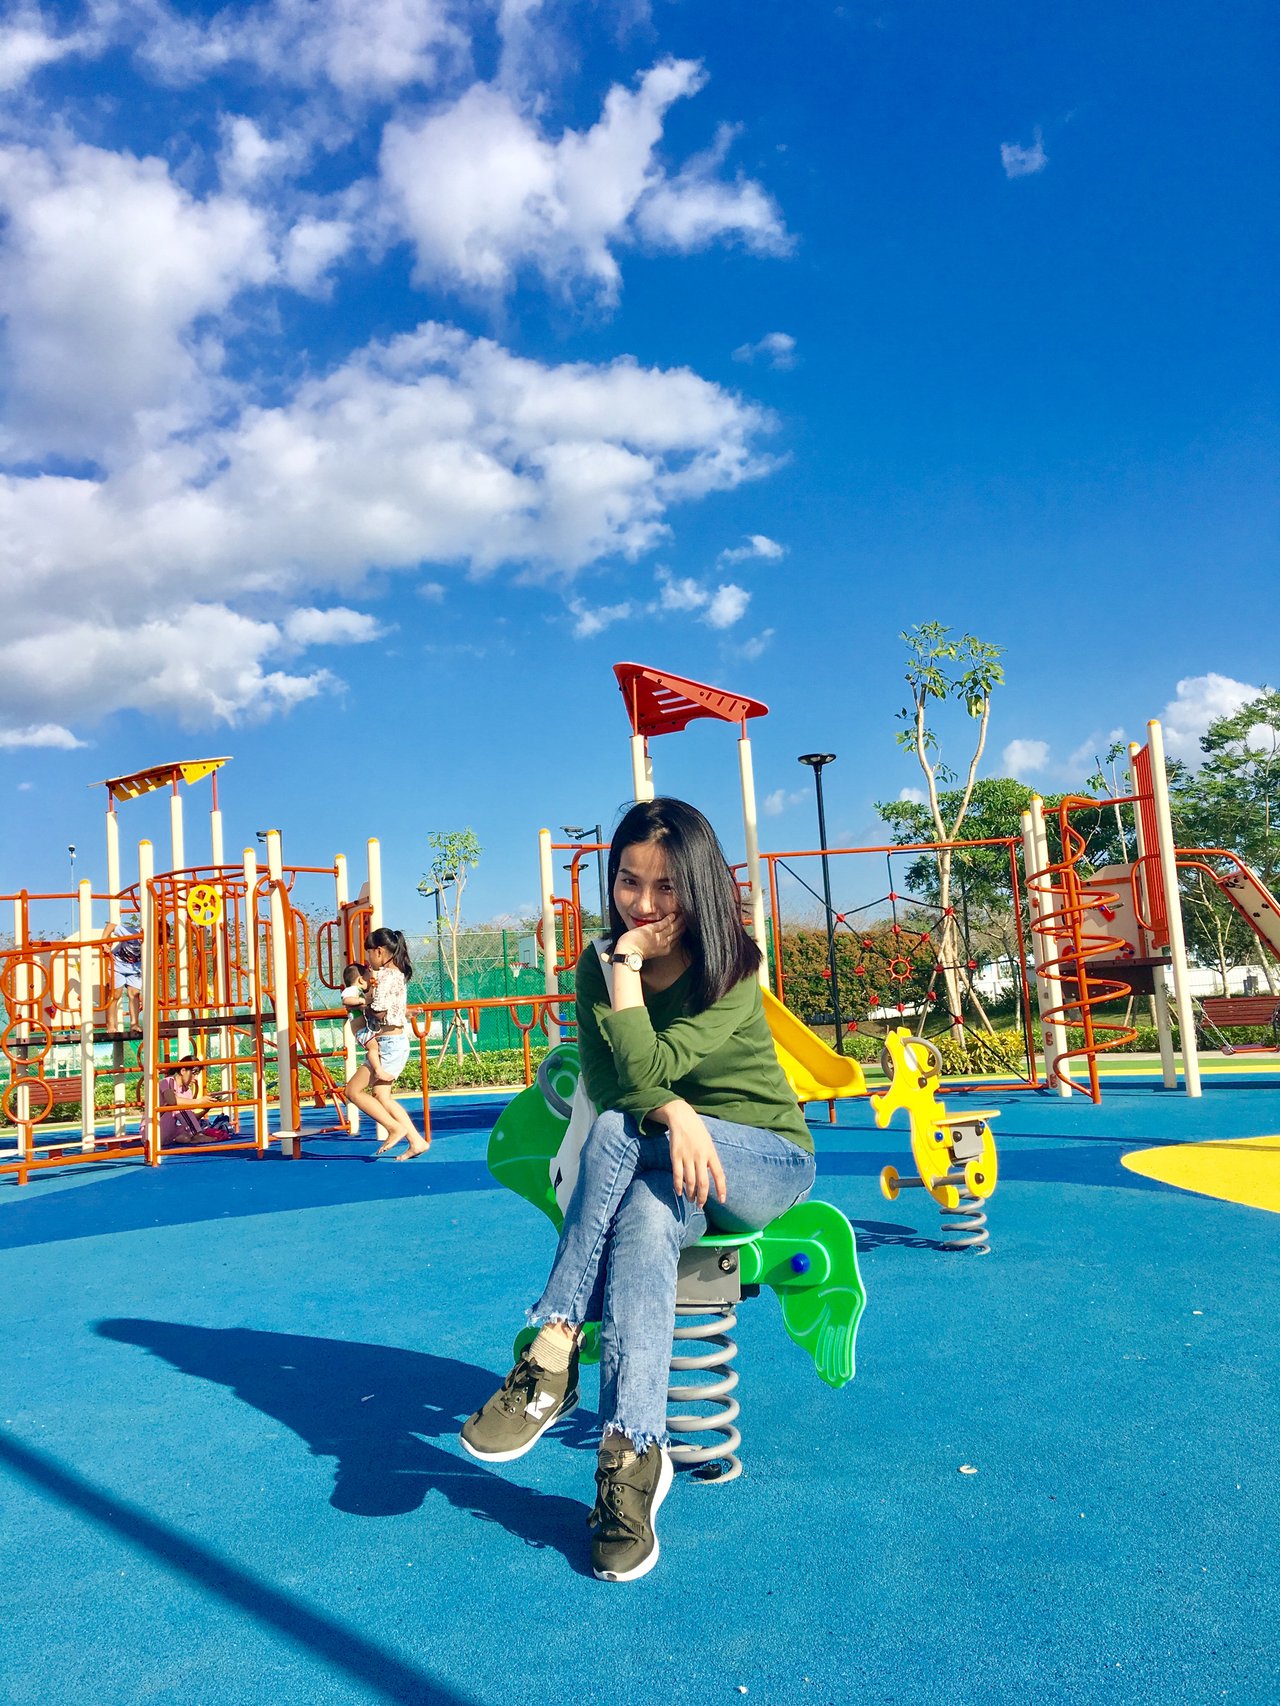 dw-playground-ide